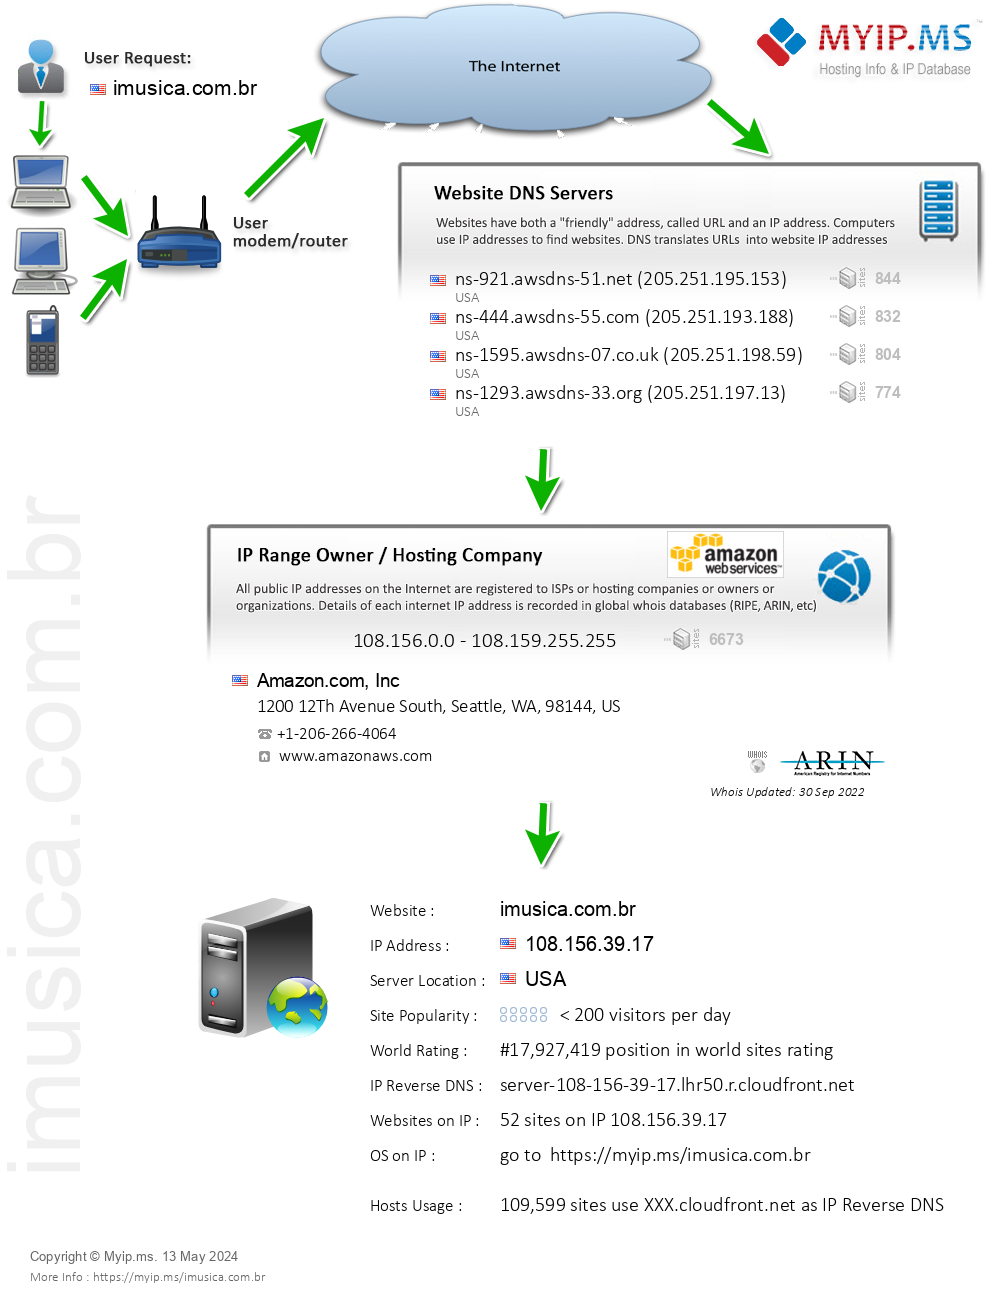 Imusica.com.br - Website Hosting Visual IP Diagram